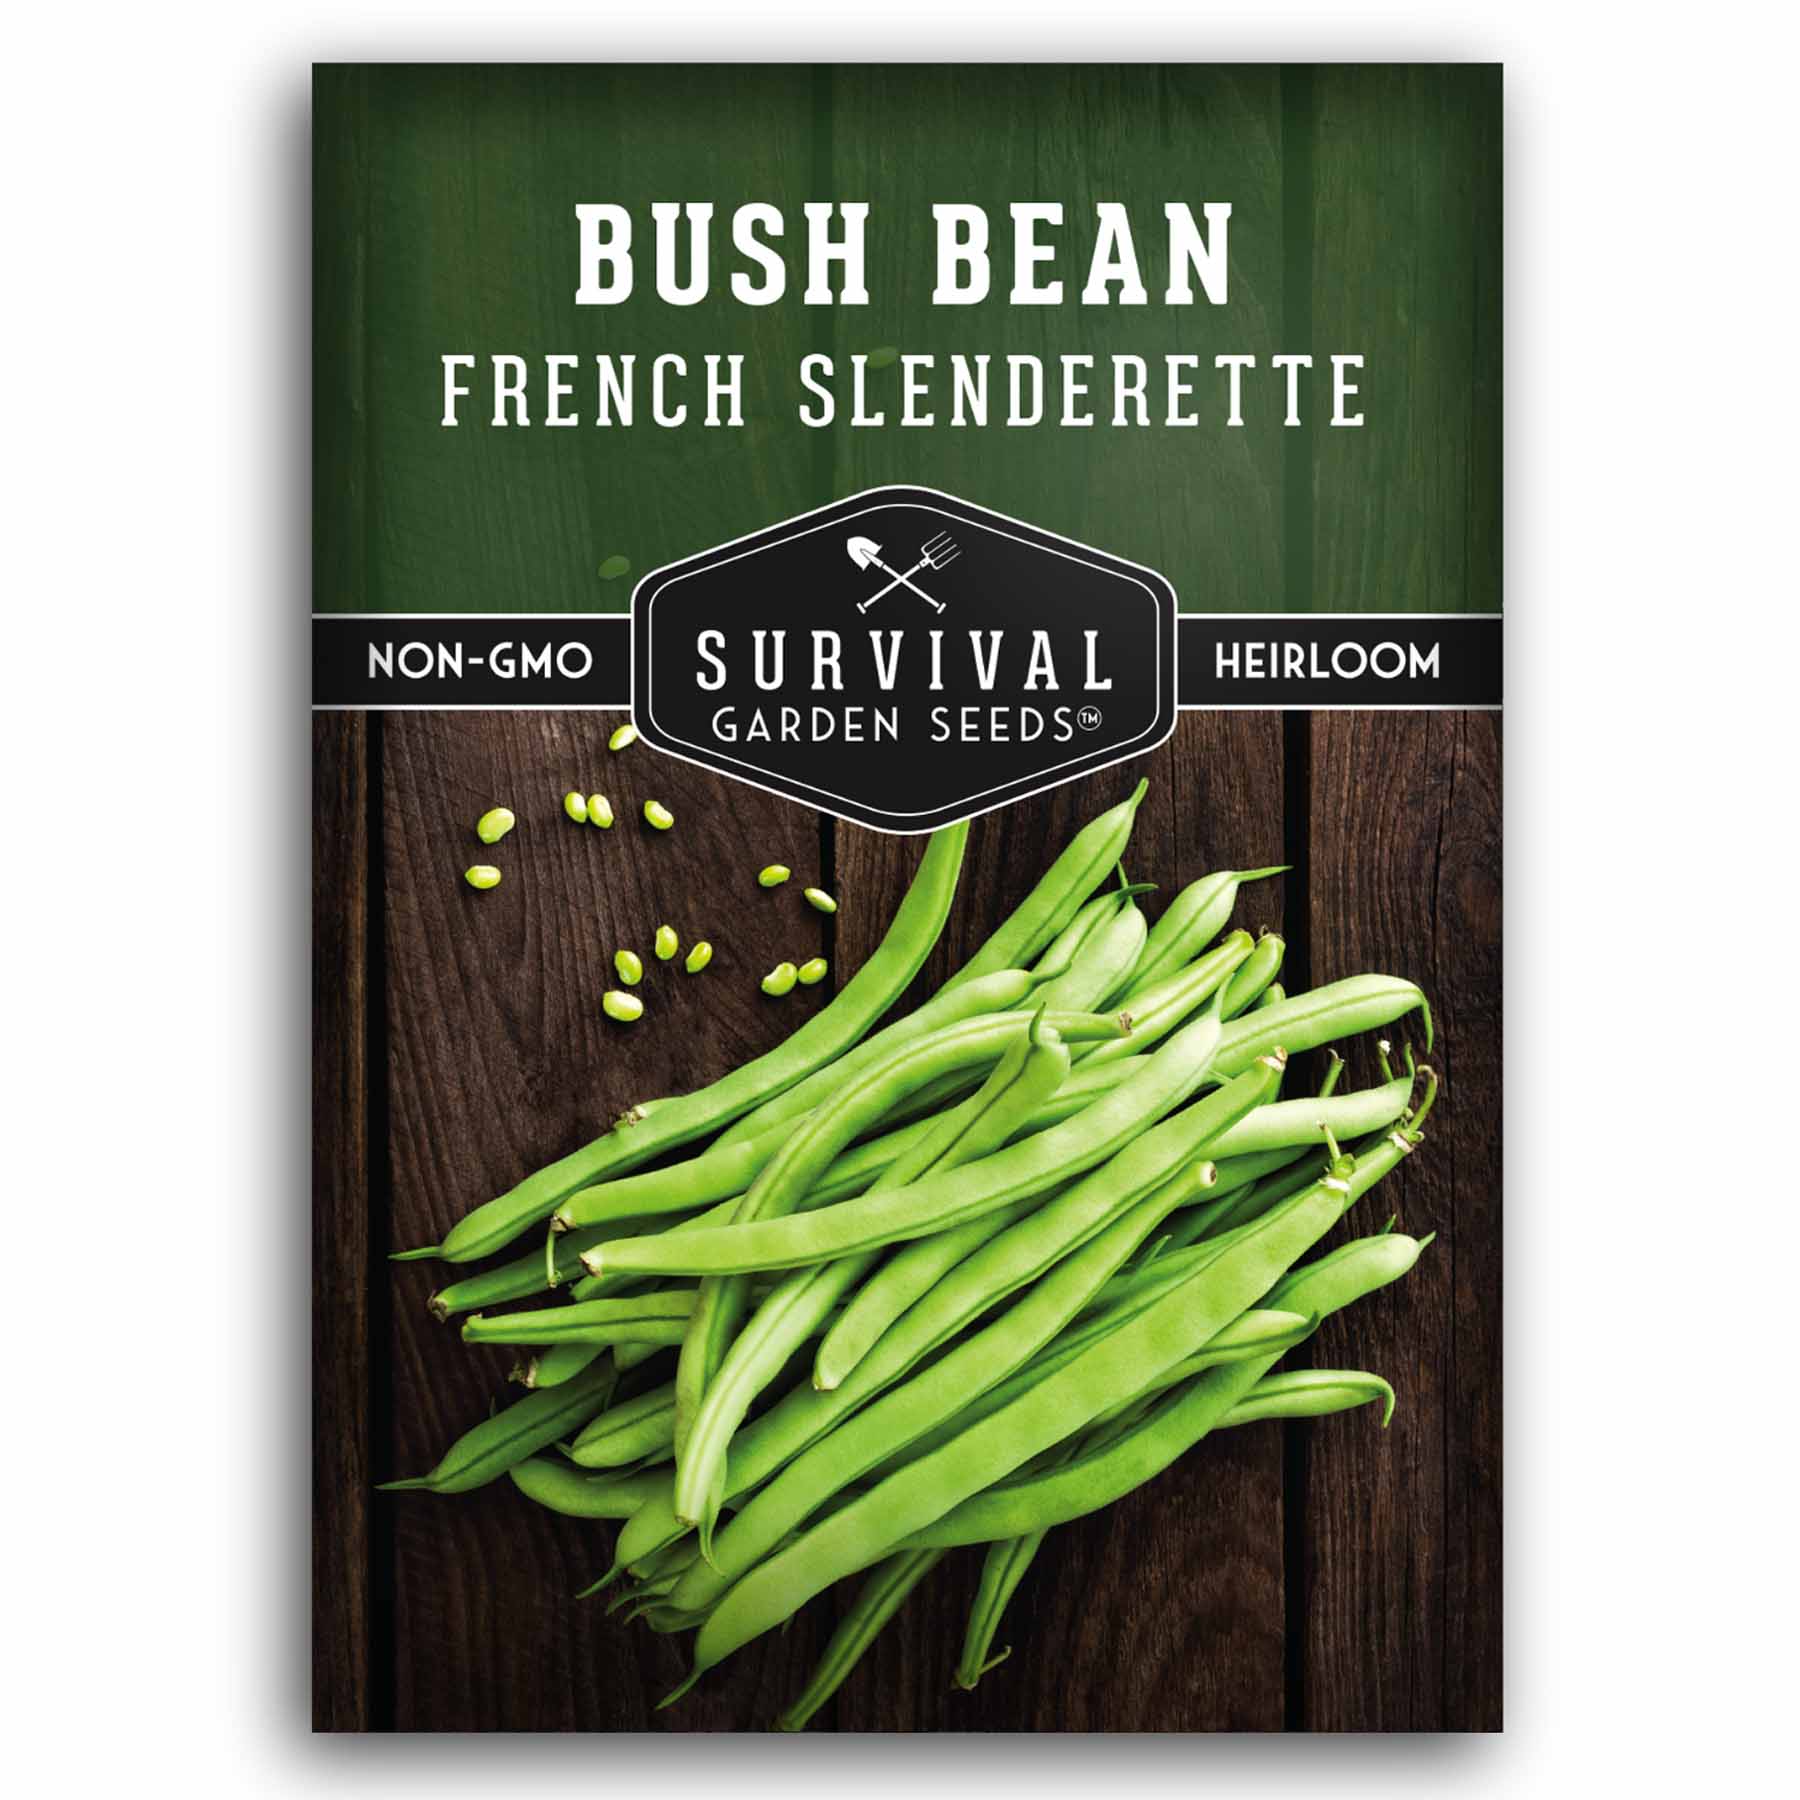 1 packet of French Slenderette Bush Beans